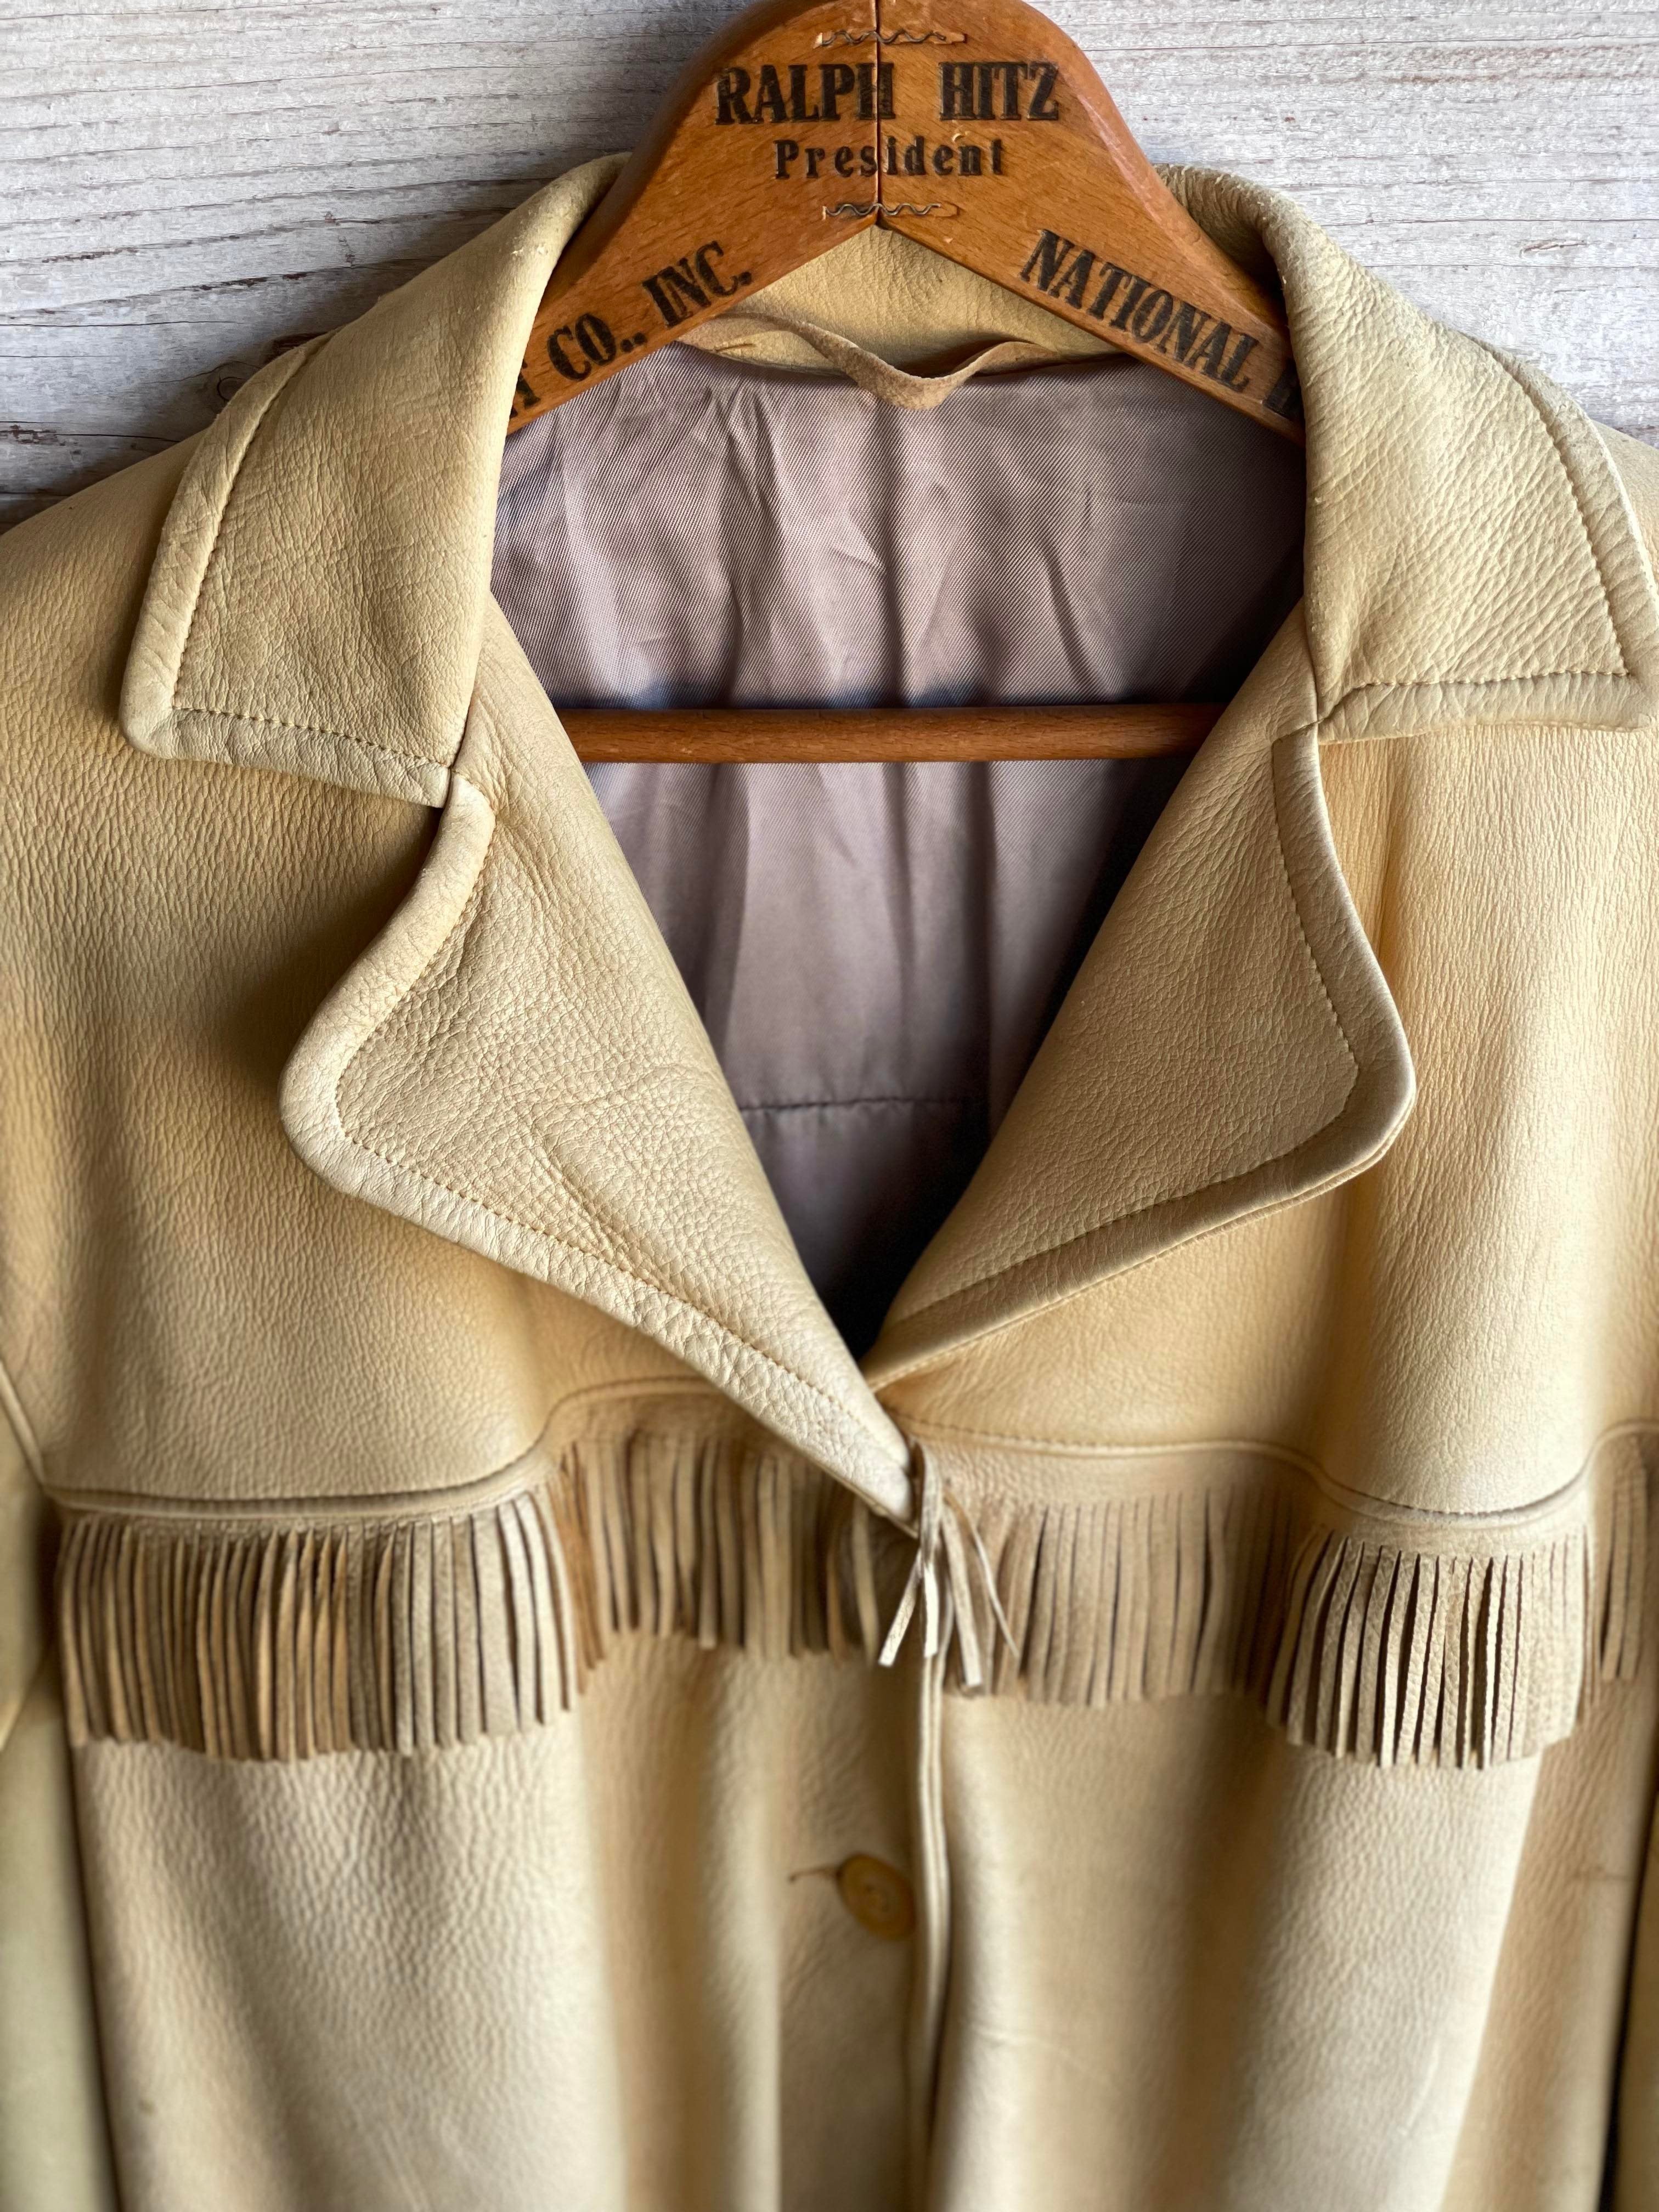 Golden Deerskin Jacket from the 60's